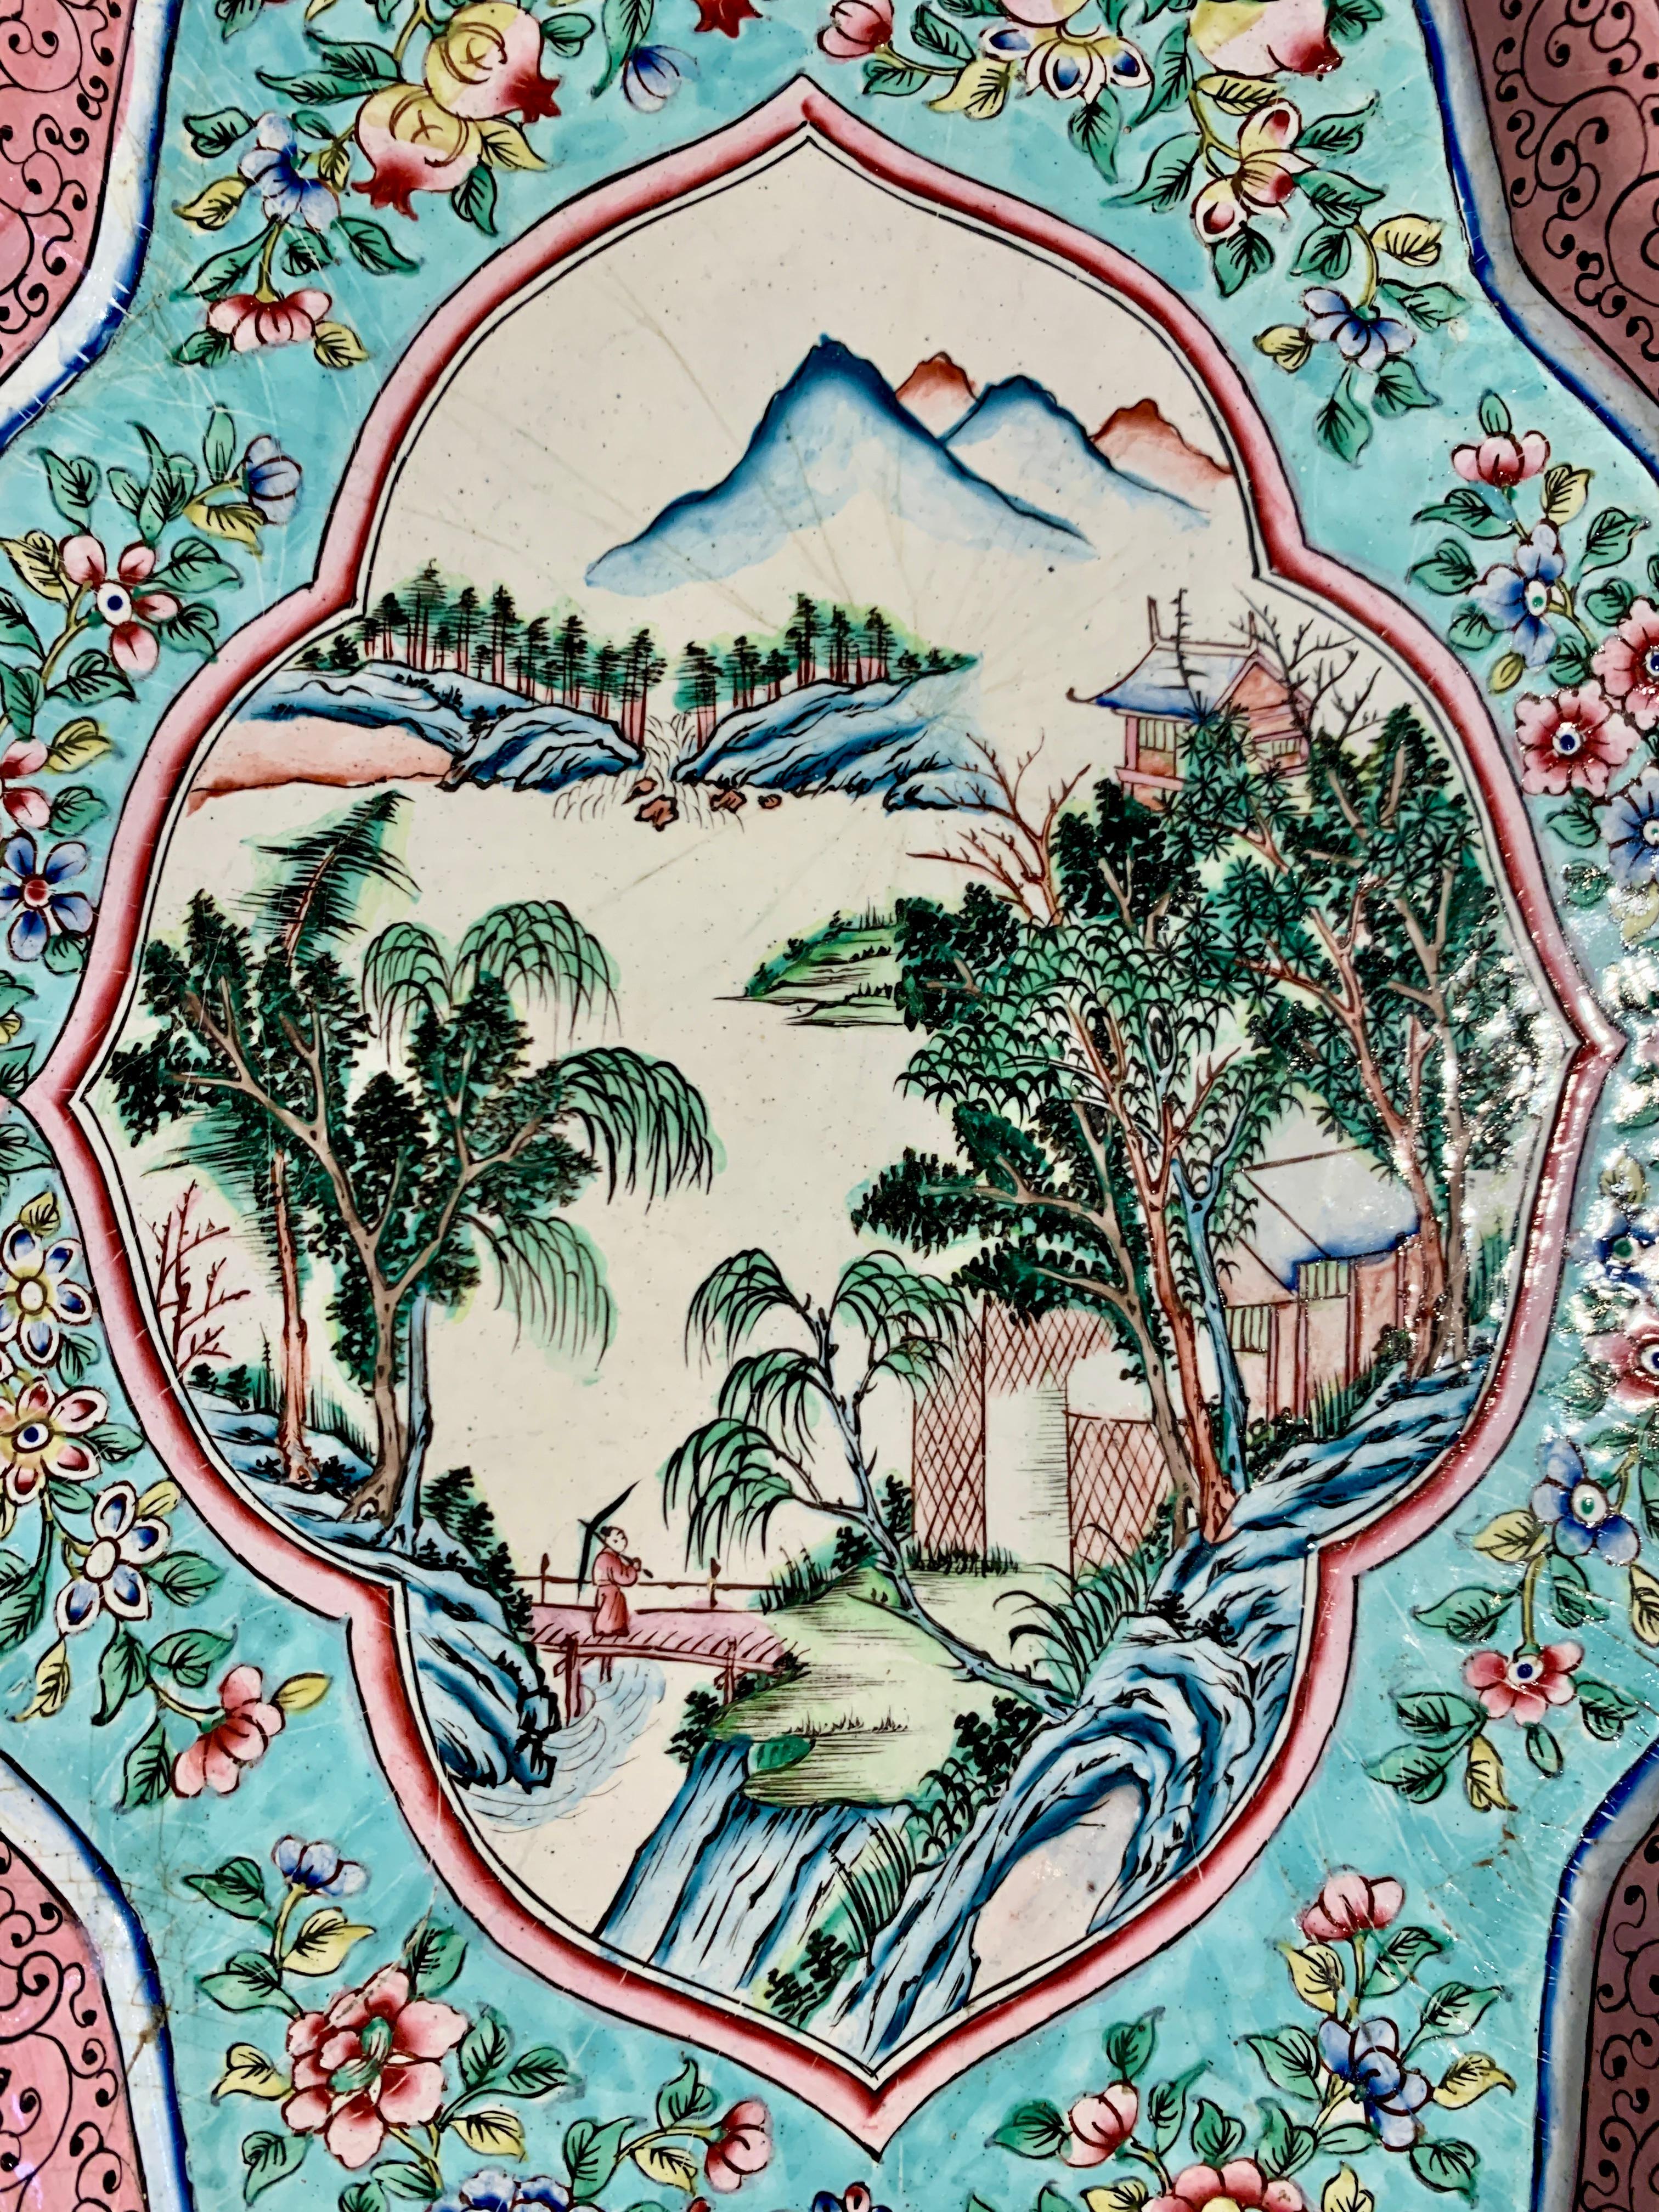 Un beau grand plateau quadrilobé en émail de Canton, période de la République, vers 1920, Chine. 

Plateau en cuivre de forme quadrilobée lobée, décoré d'émaux de Canton de couleur turquoise, rose, blanc, bleu, vert et noir. 

Une grande réserve